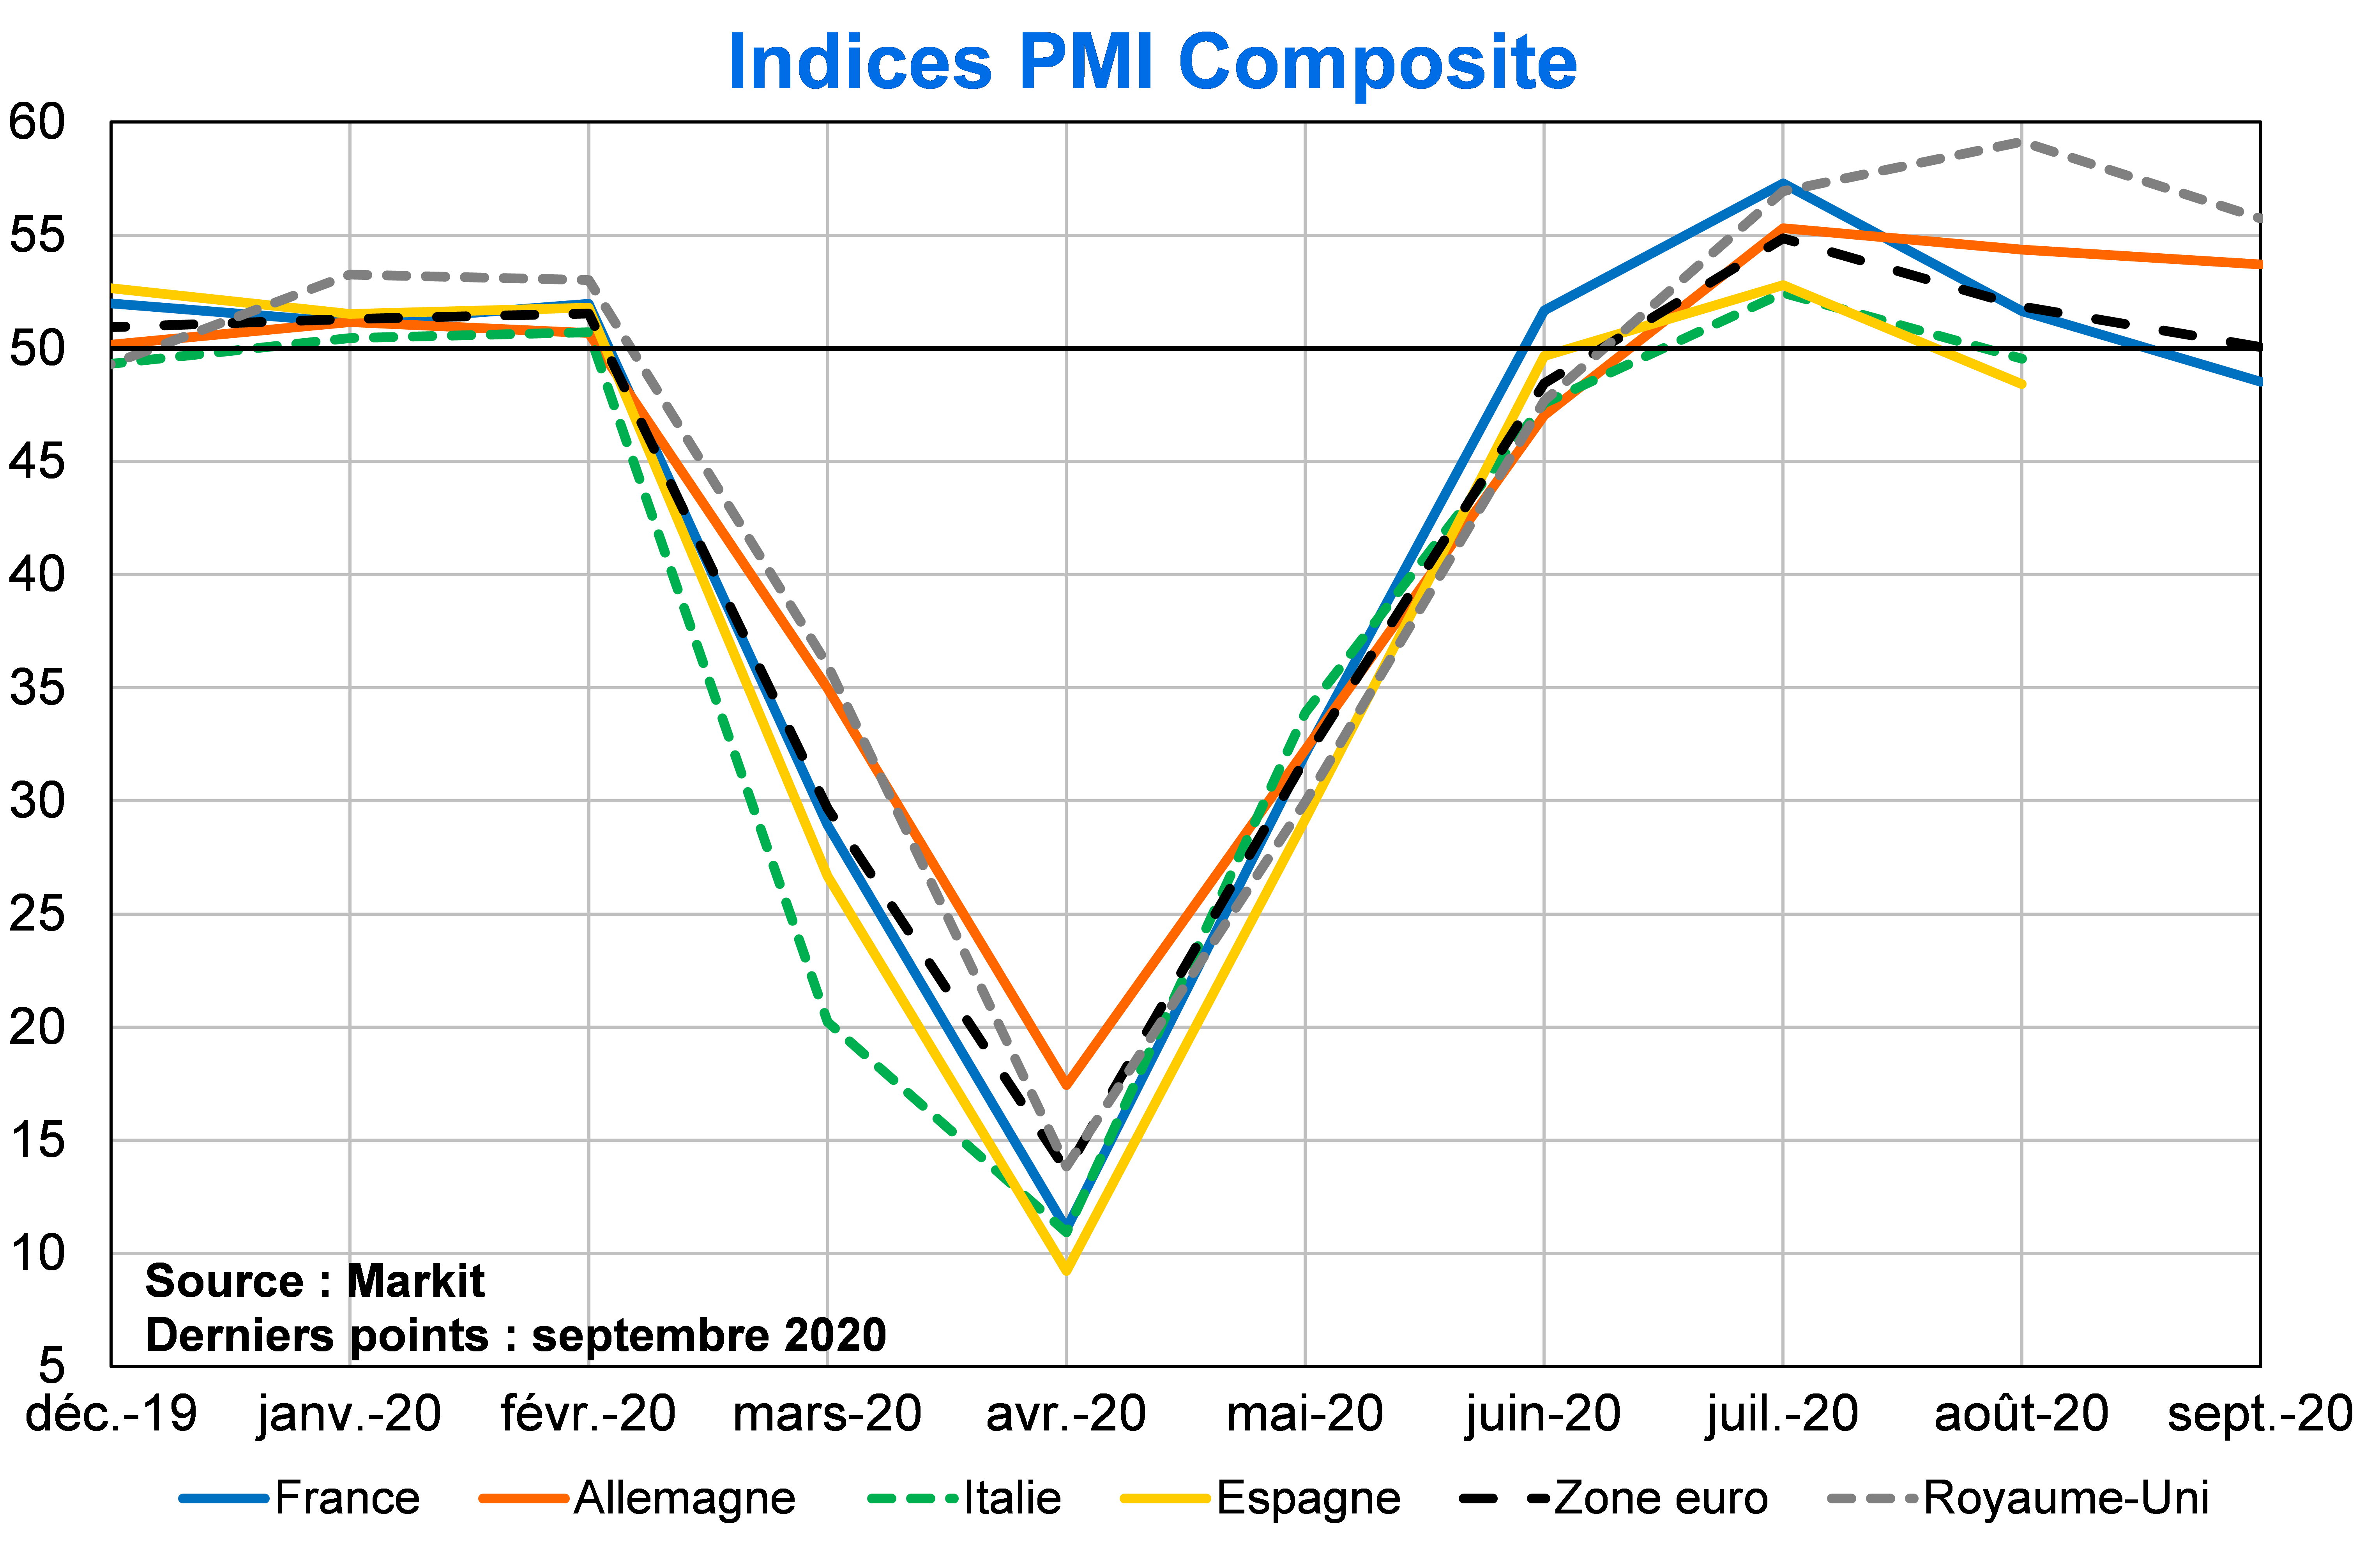 Indices PMI composite